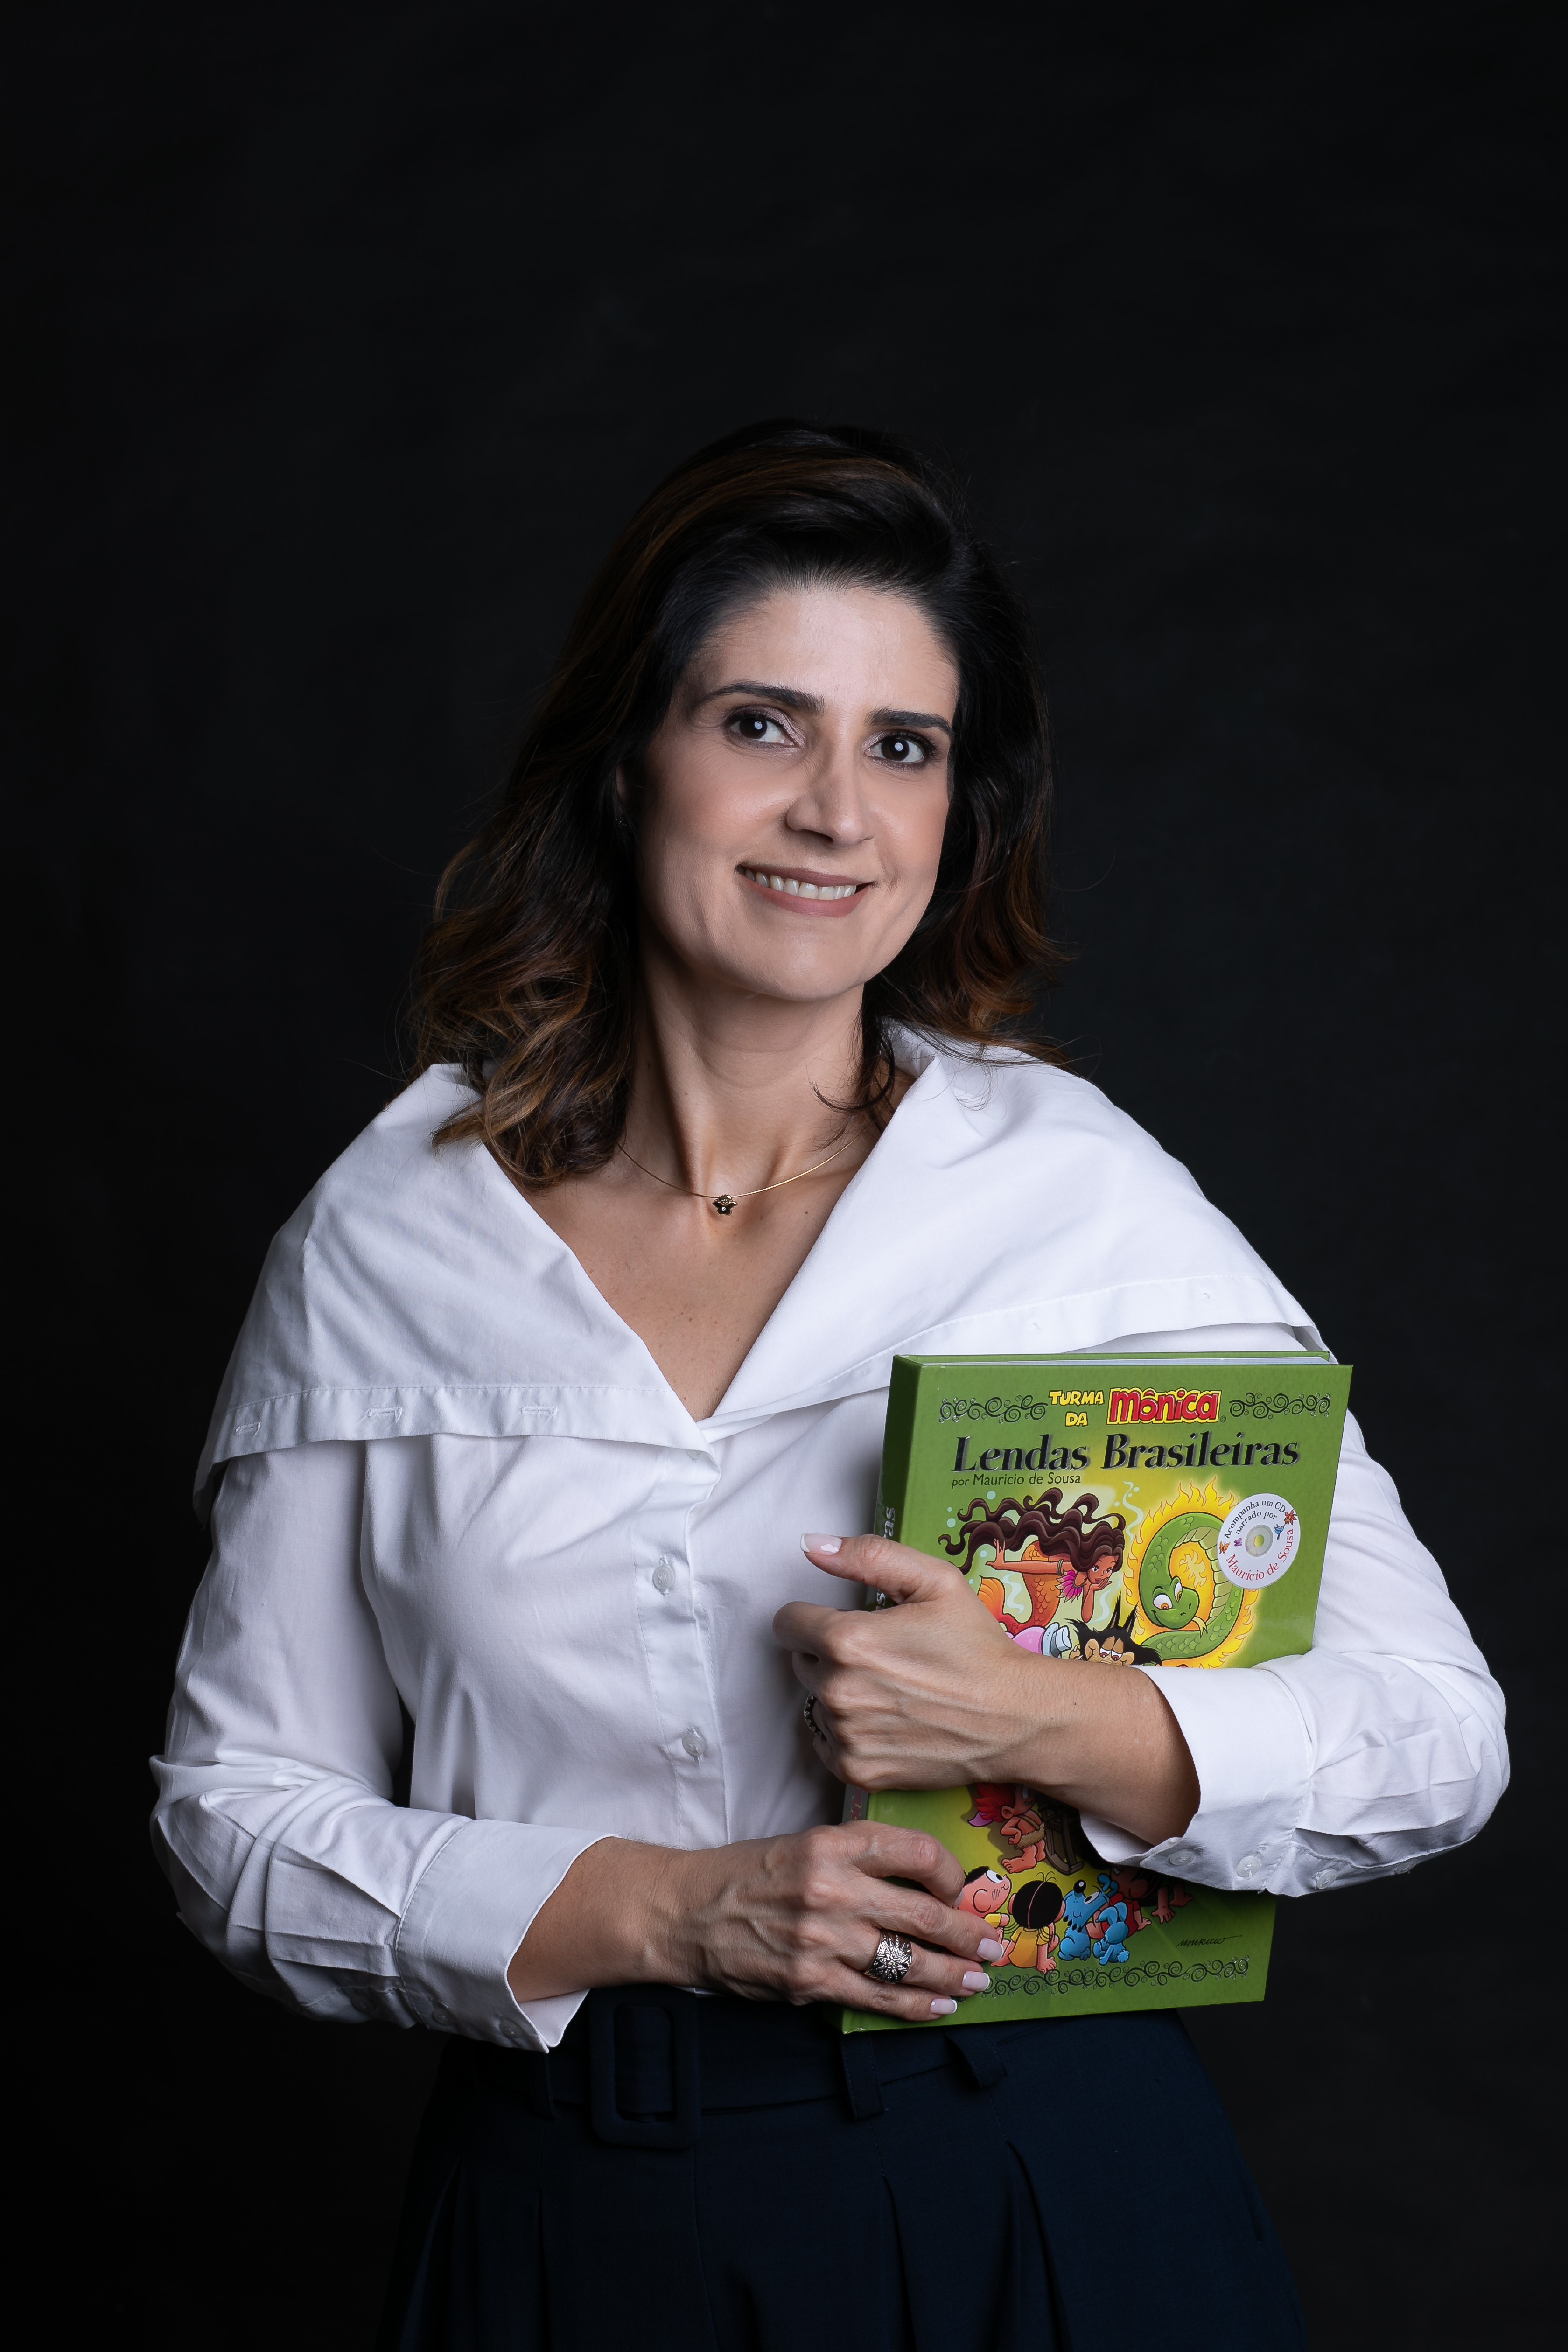 Karine Pansa segura o livro "Lendas Brasileiras", de Maurício de Souza